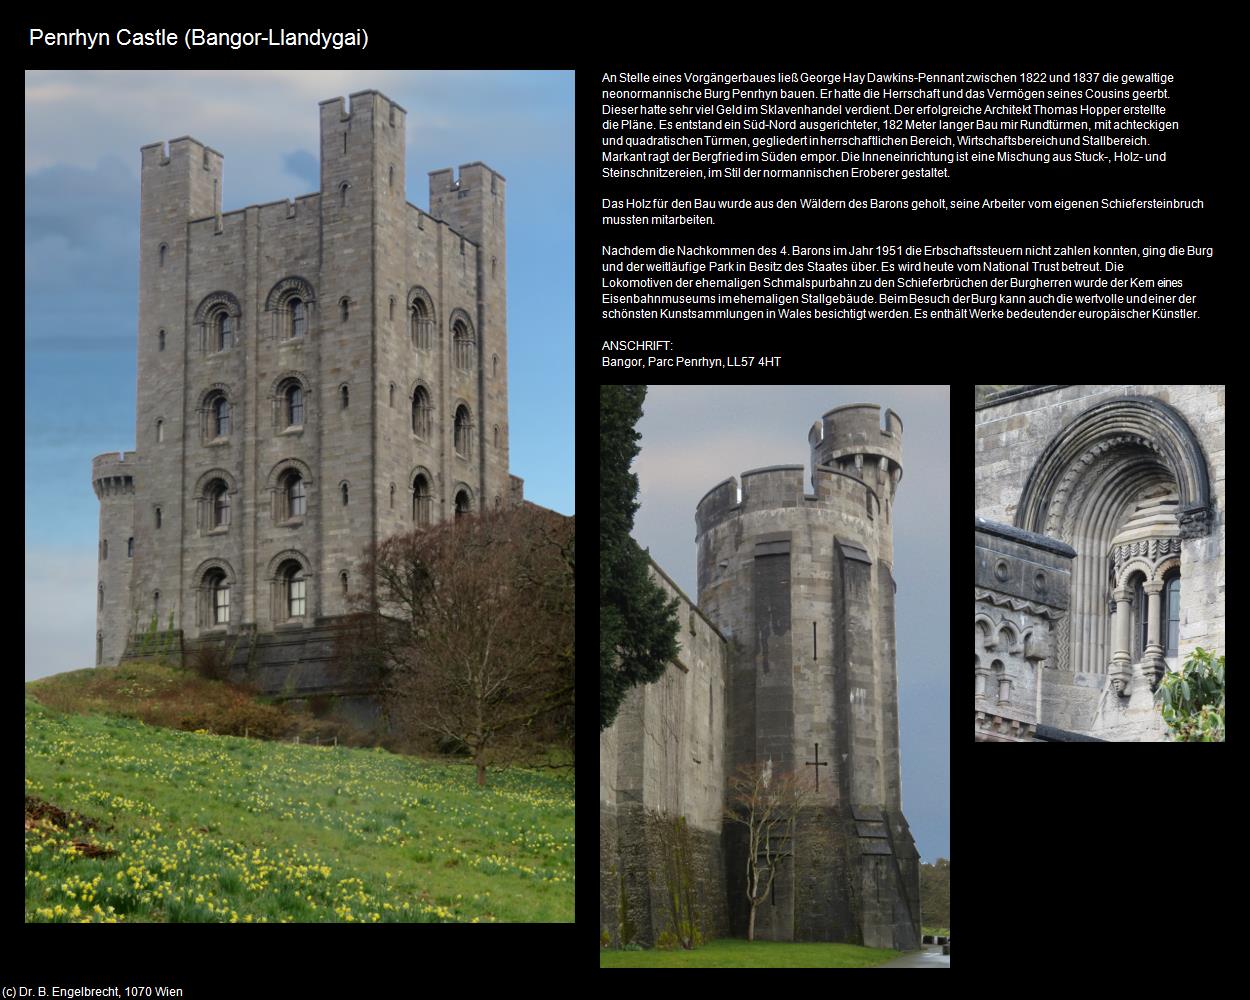 Penrhyn Castle (Llandygai)             (Bangor-Llandygai, Wales) in Kulturatlas-ENGLAND und WALES